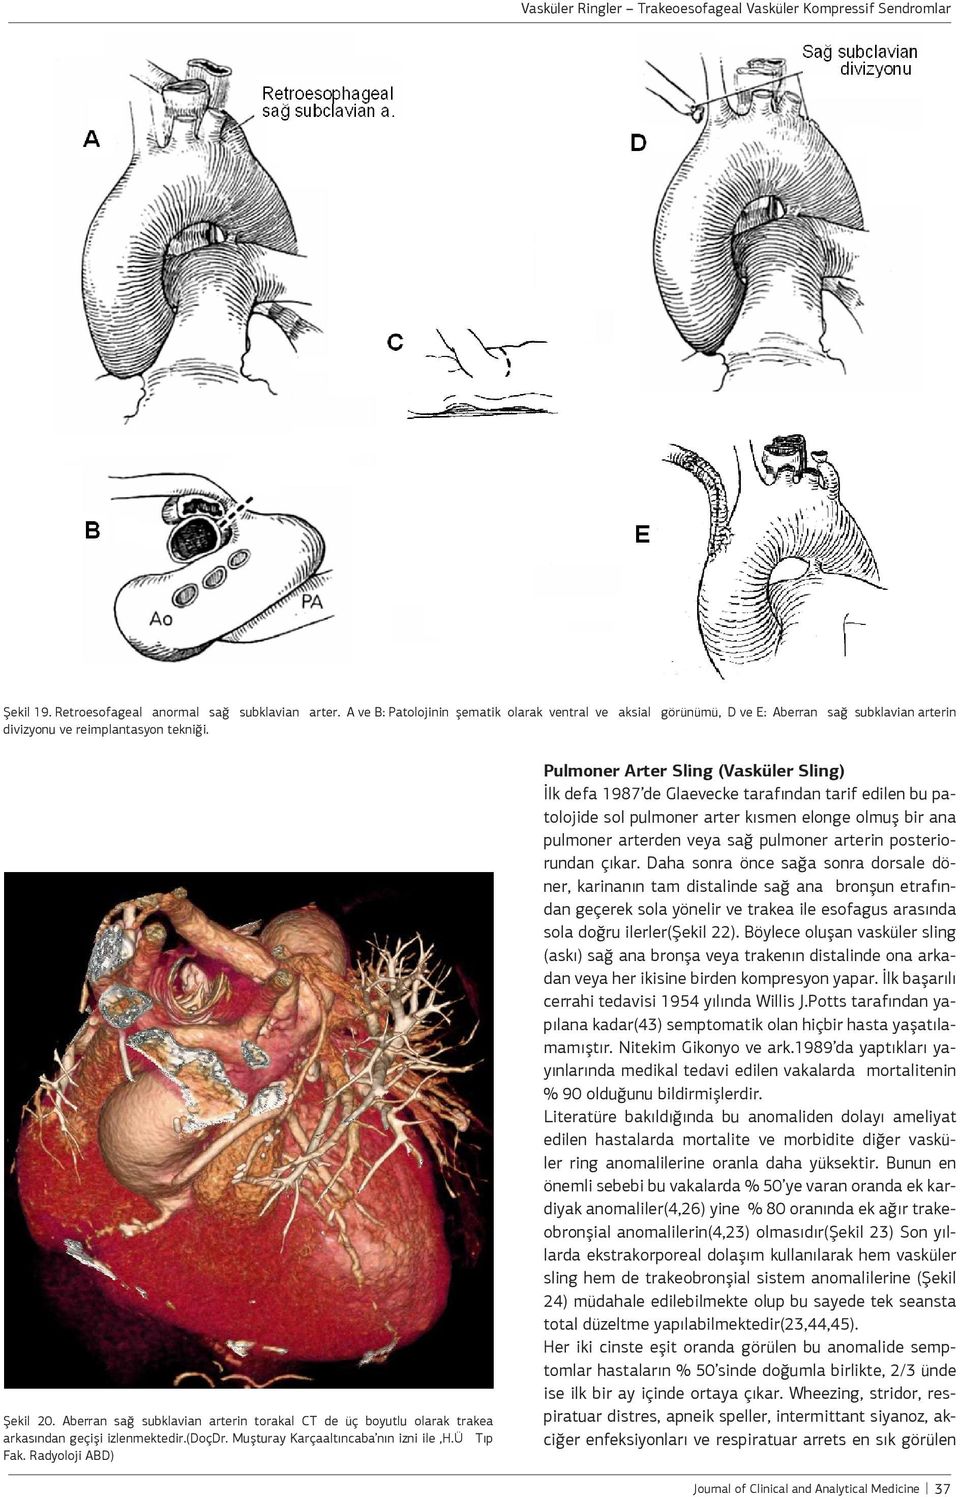 Radyoloji ABD) Pulmoner Arter Sling (Vasküler Sling) İlk defa 1987 de Glaevecke tarafından tarif edilen bu patolojide sol pulmoner arter kısmen elonge olmuş bir ana pulmoner arterden veya sağ